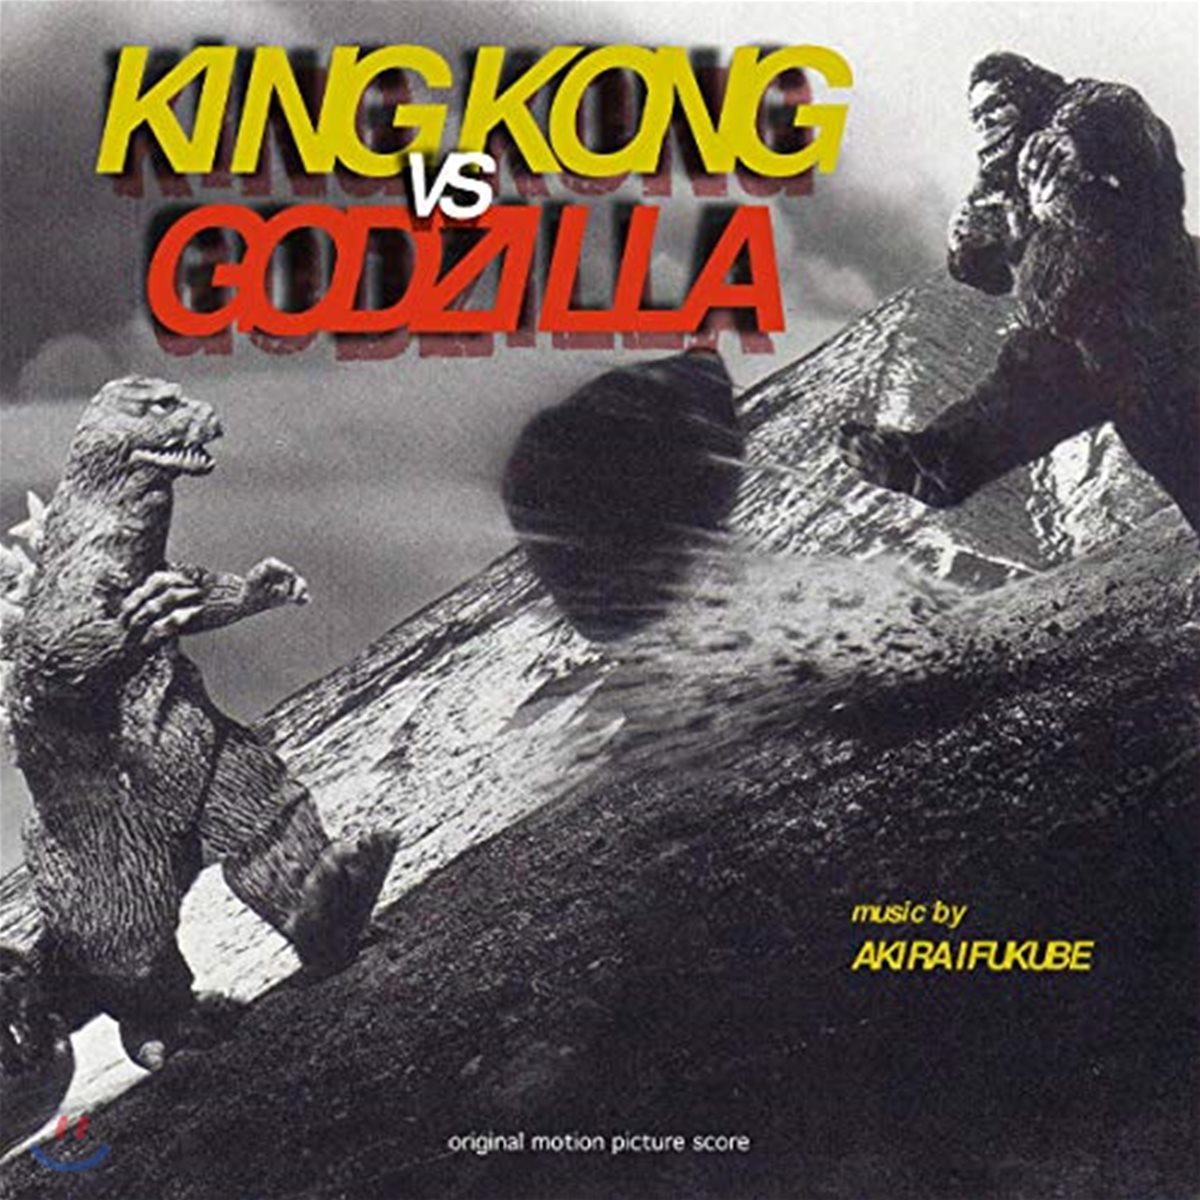 킹콩 대 고질라 영화음악 (King Kong Vs Godzilla OST by Akira Ifukube) [LP]